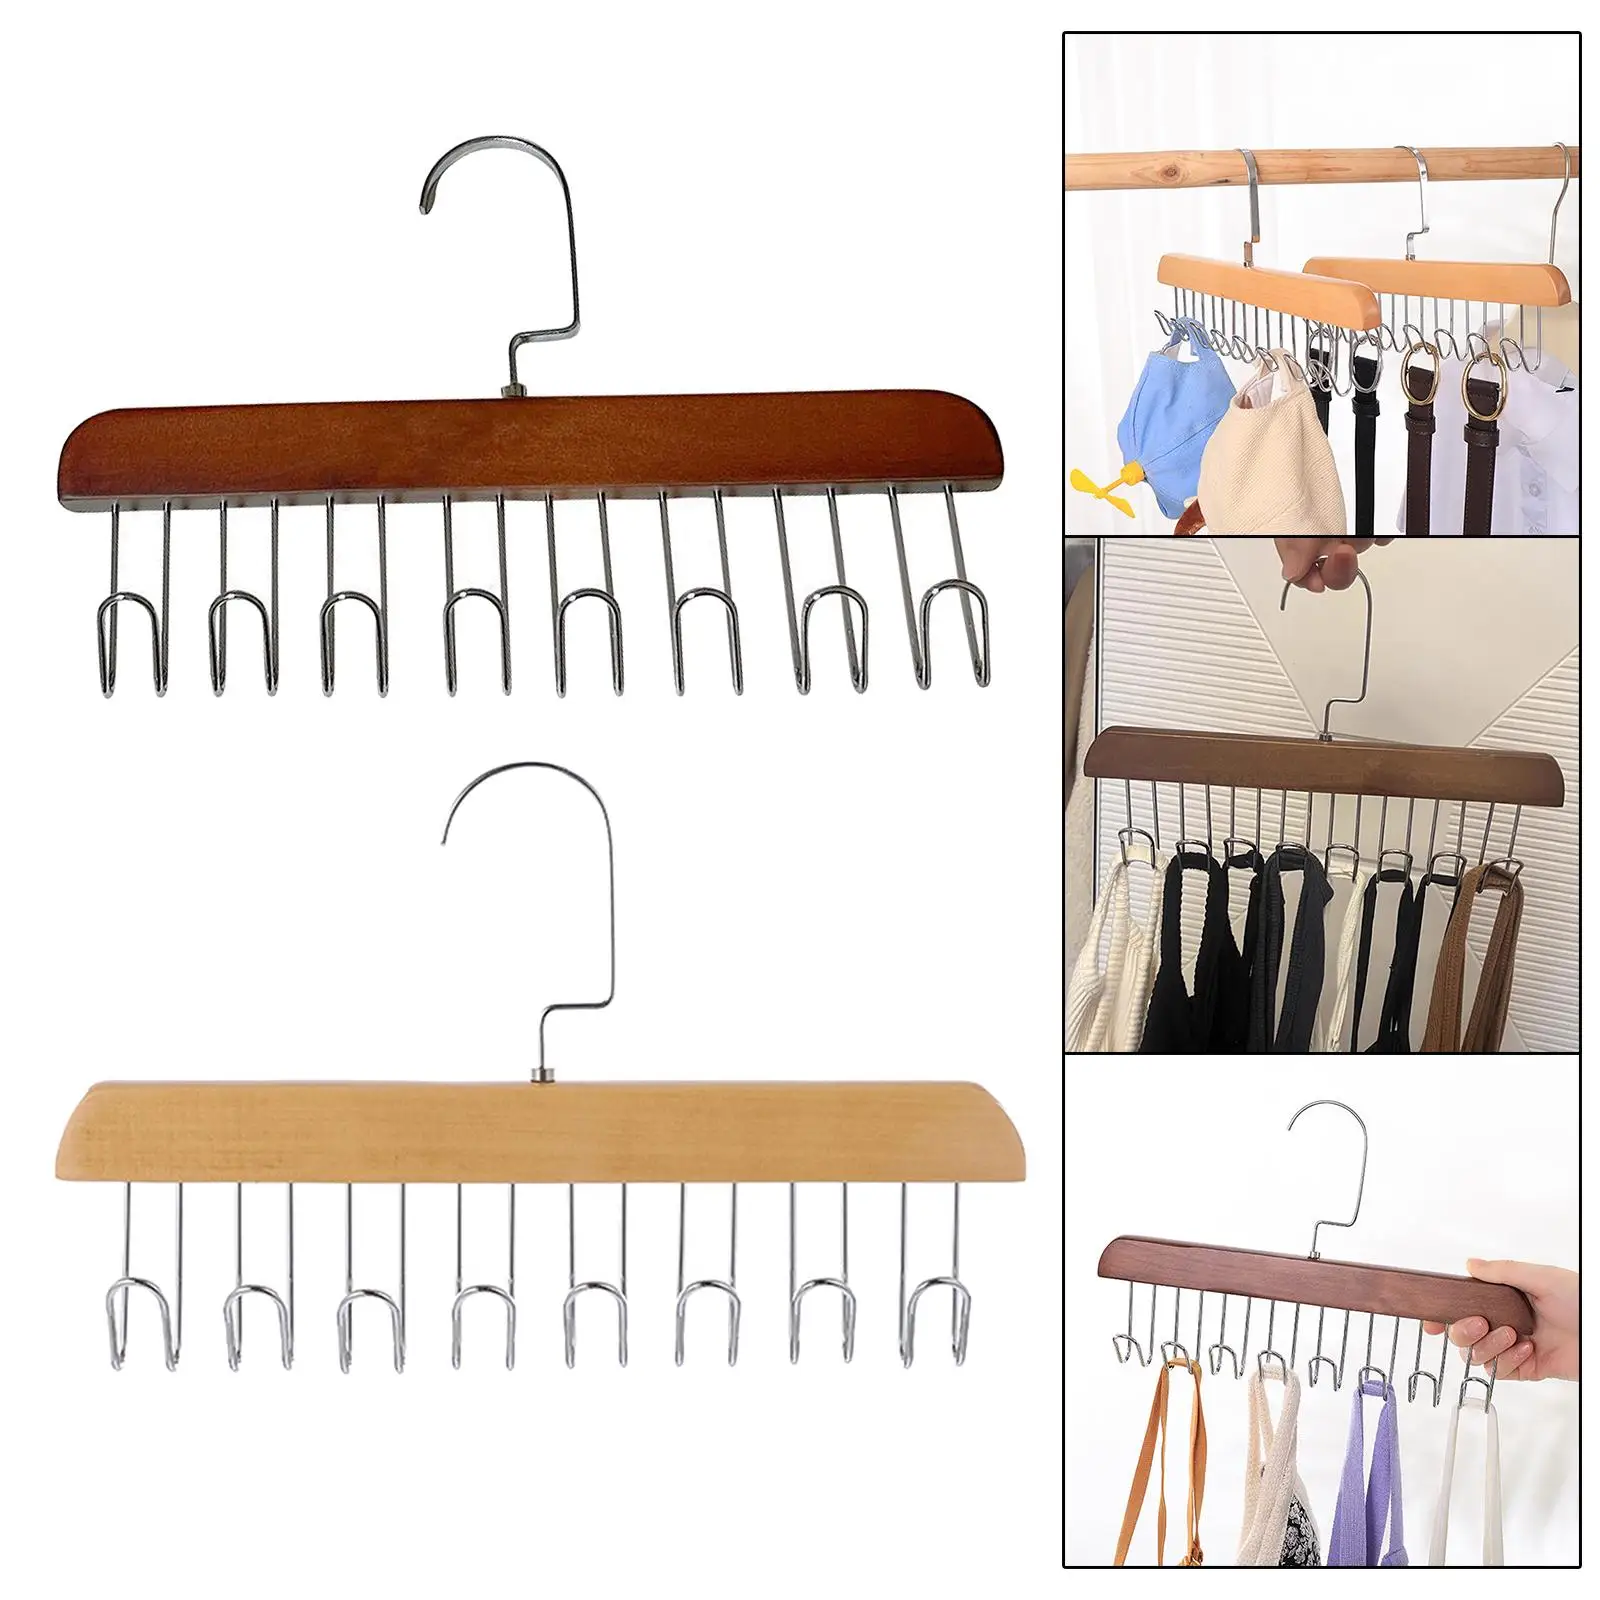 Wooden Tie Rack Accessories Space Saving Durable Belt Hanger Hanging Organizer Hook for Tank Tops Scarves Belts Hats Men Women